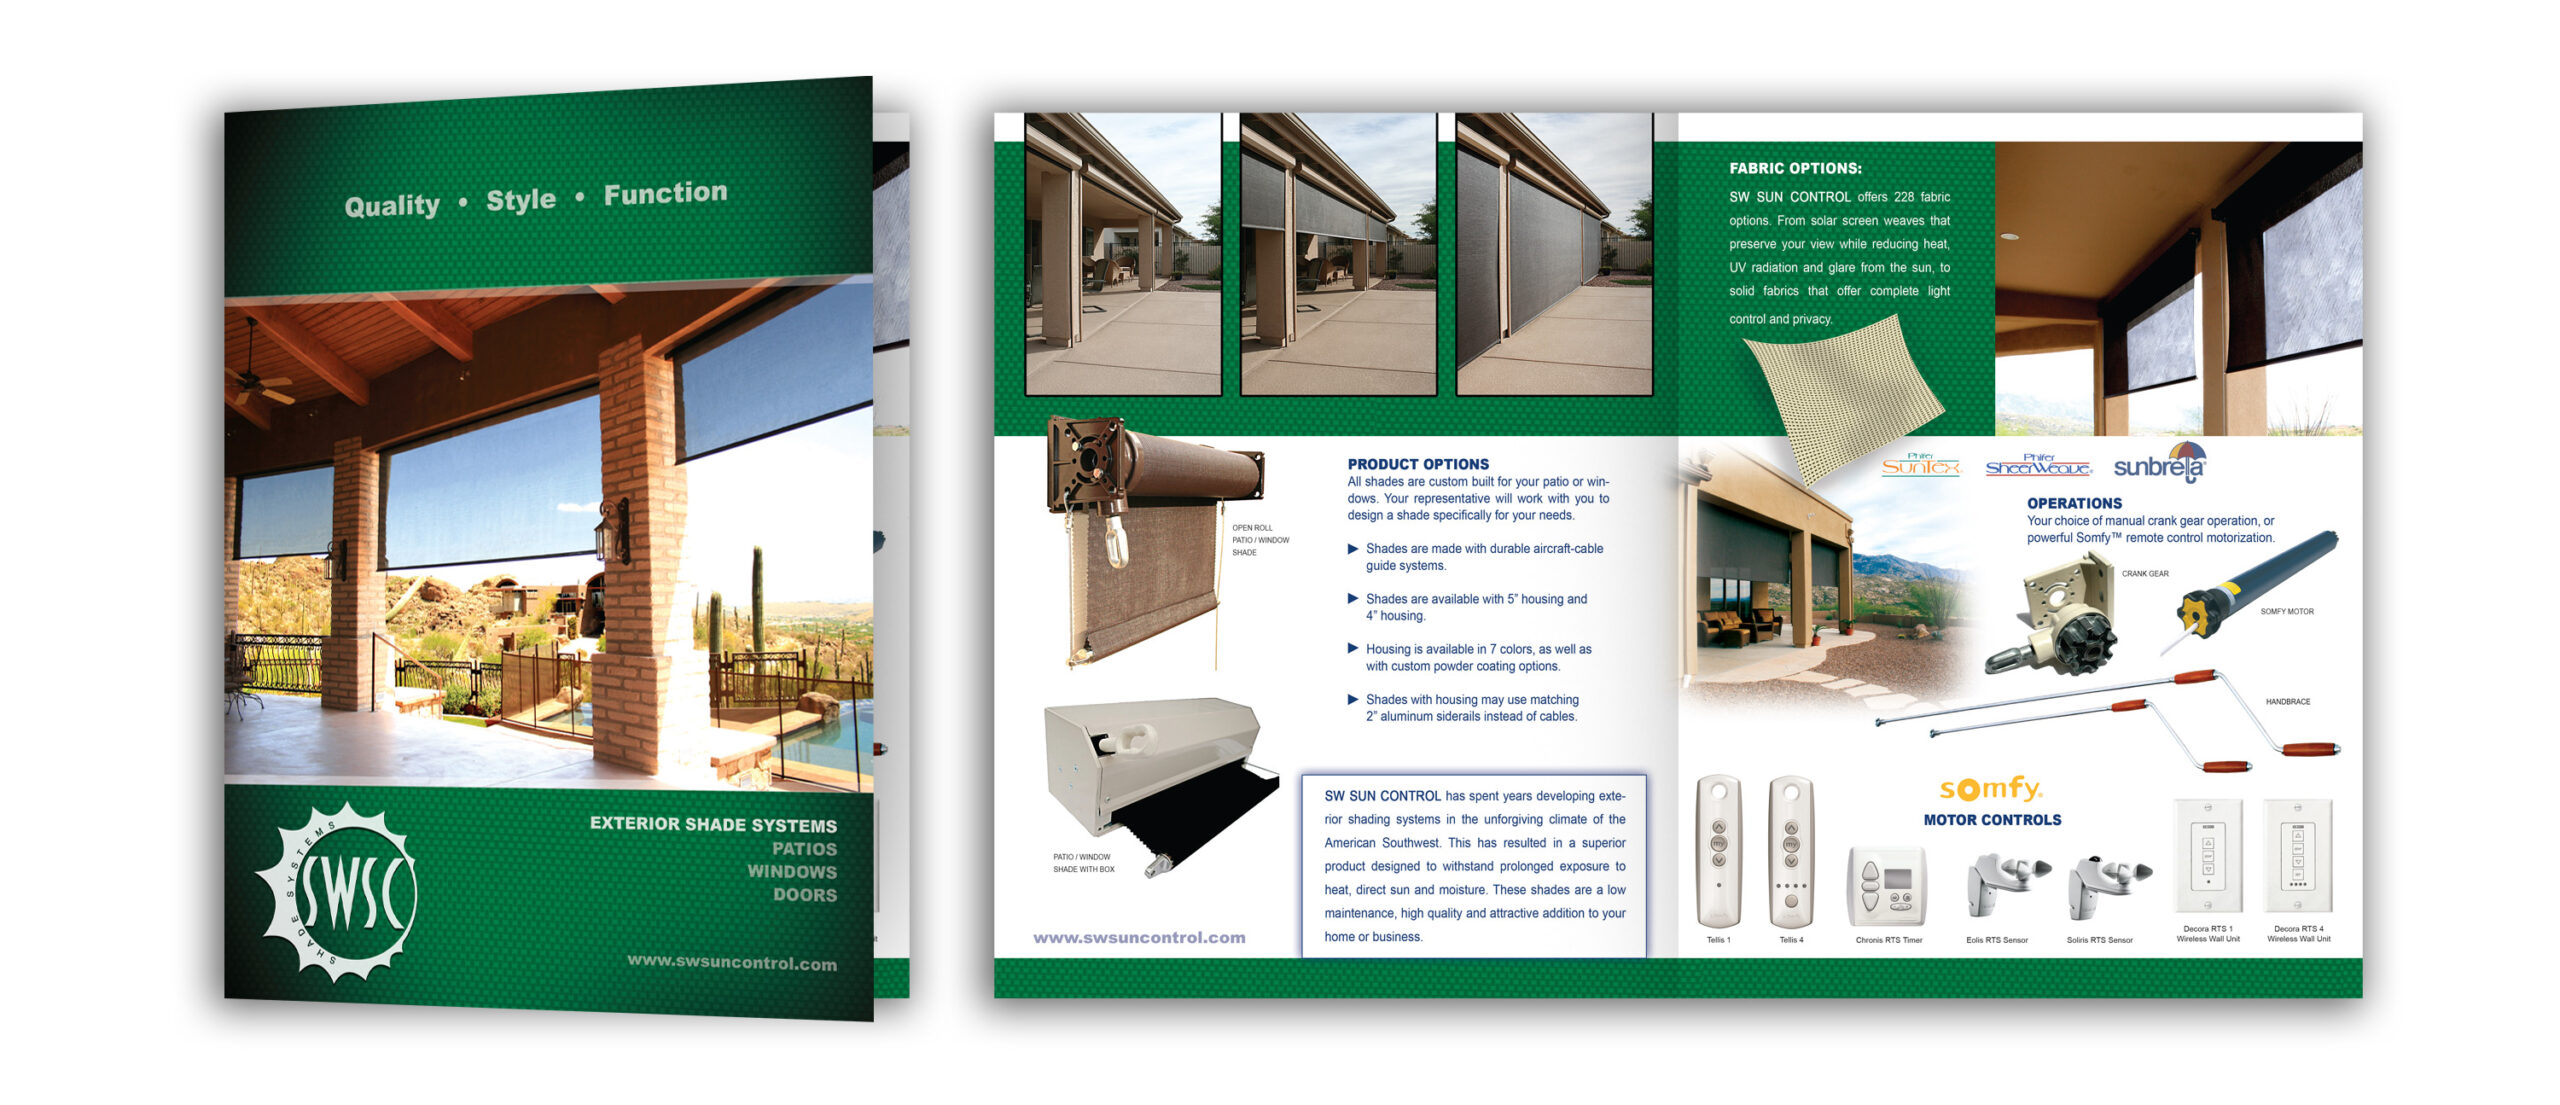 SW Sun Control Product Brochure